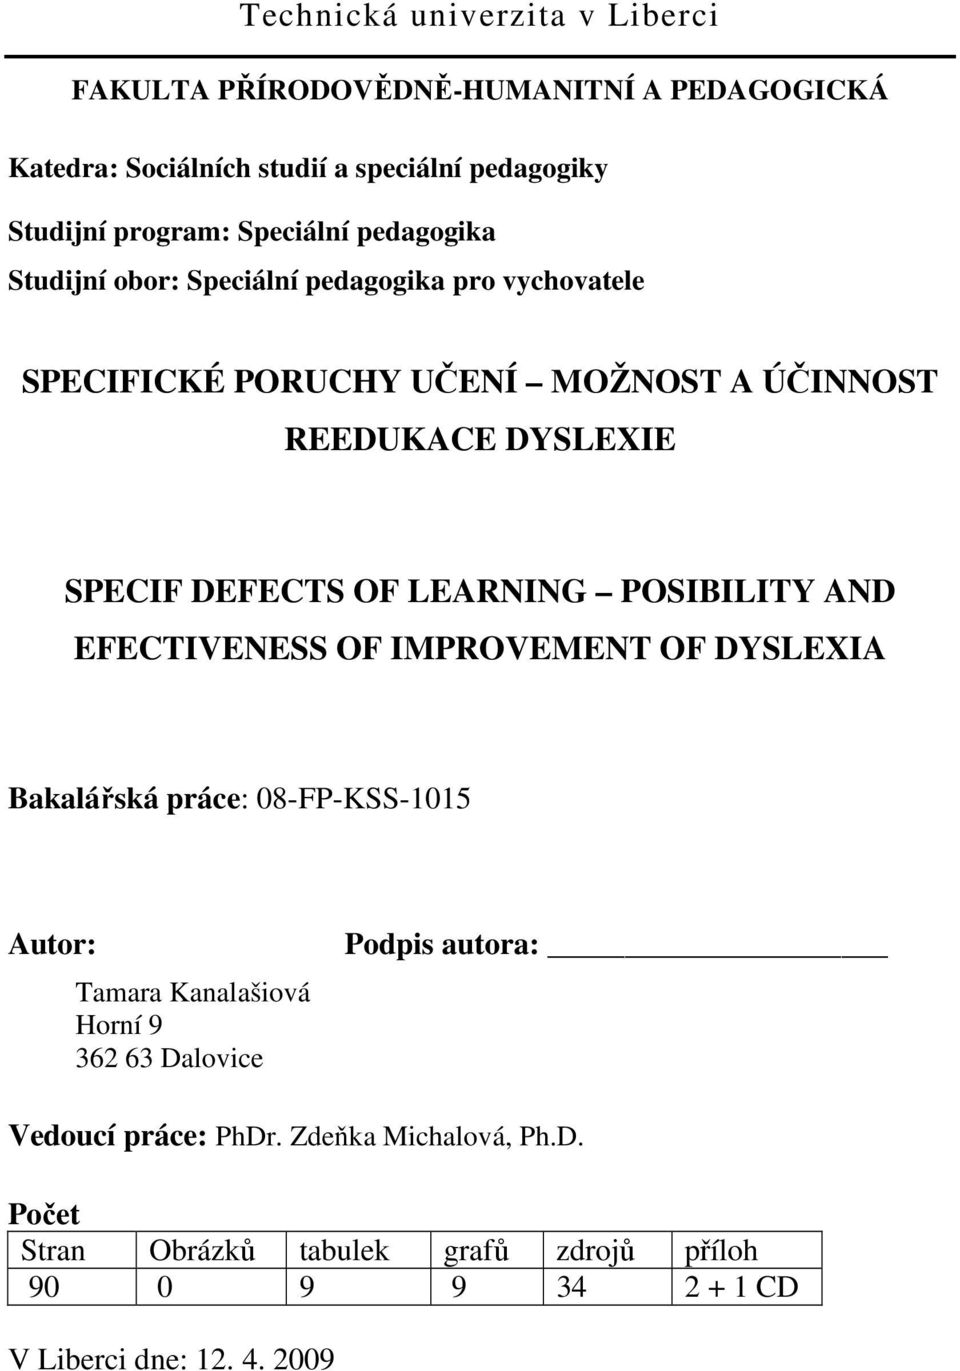 DEFECTS OF LEARNING POSIBILITY AND EFECTIVENESS OF IMPROVEMENT OF DYSLEXIA Bakalářská práce: 08-FP-KSS-1015 Autor: Tamara Kanalašiová Horní 9 362 63